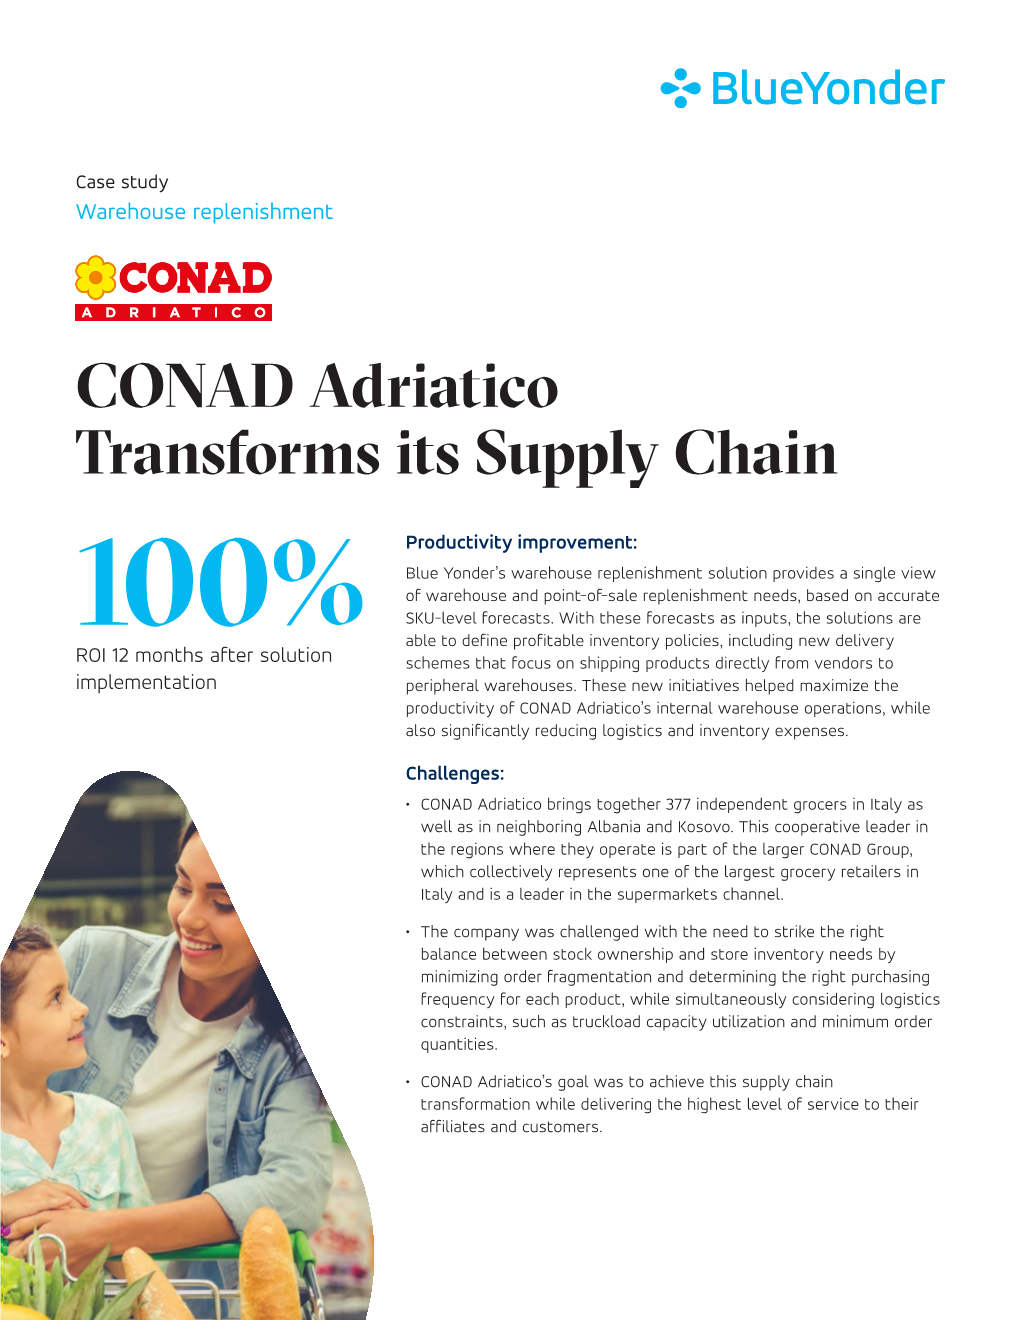 CONAD Adriatico Transforms Its Supply Chain